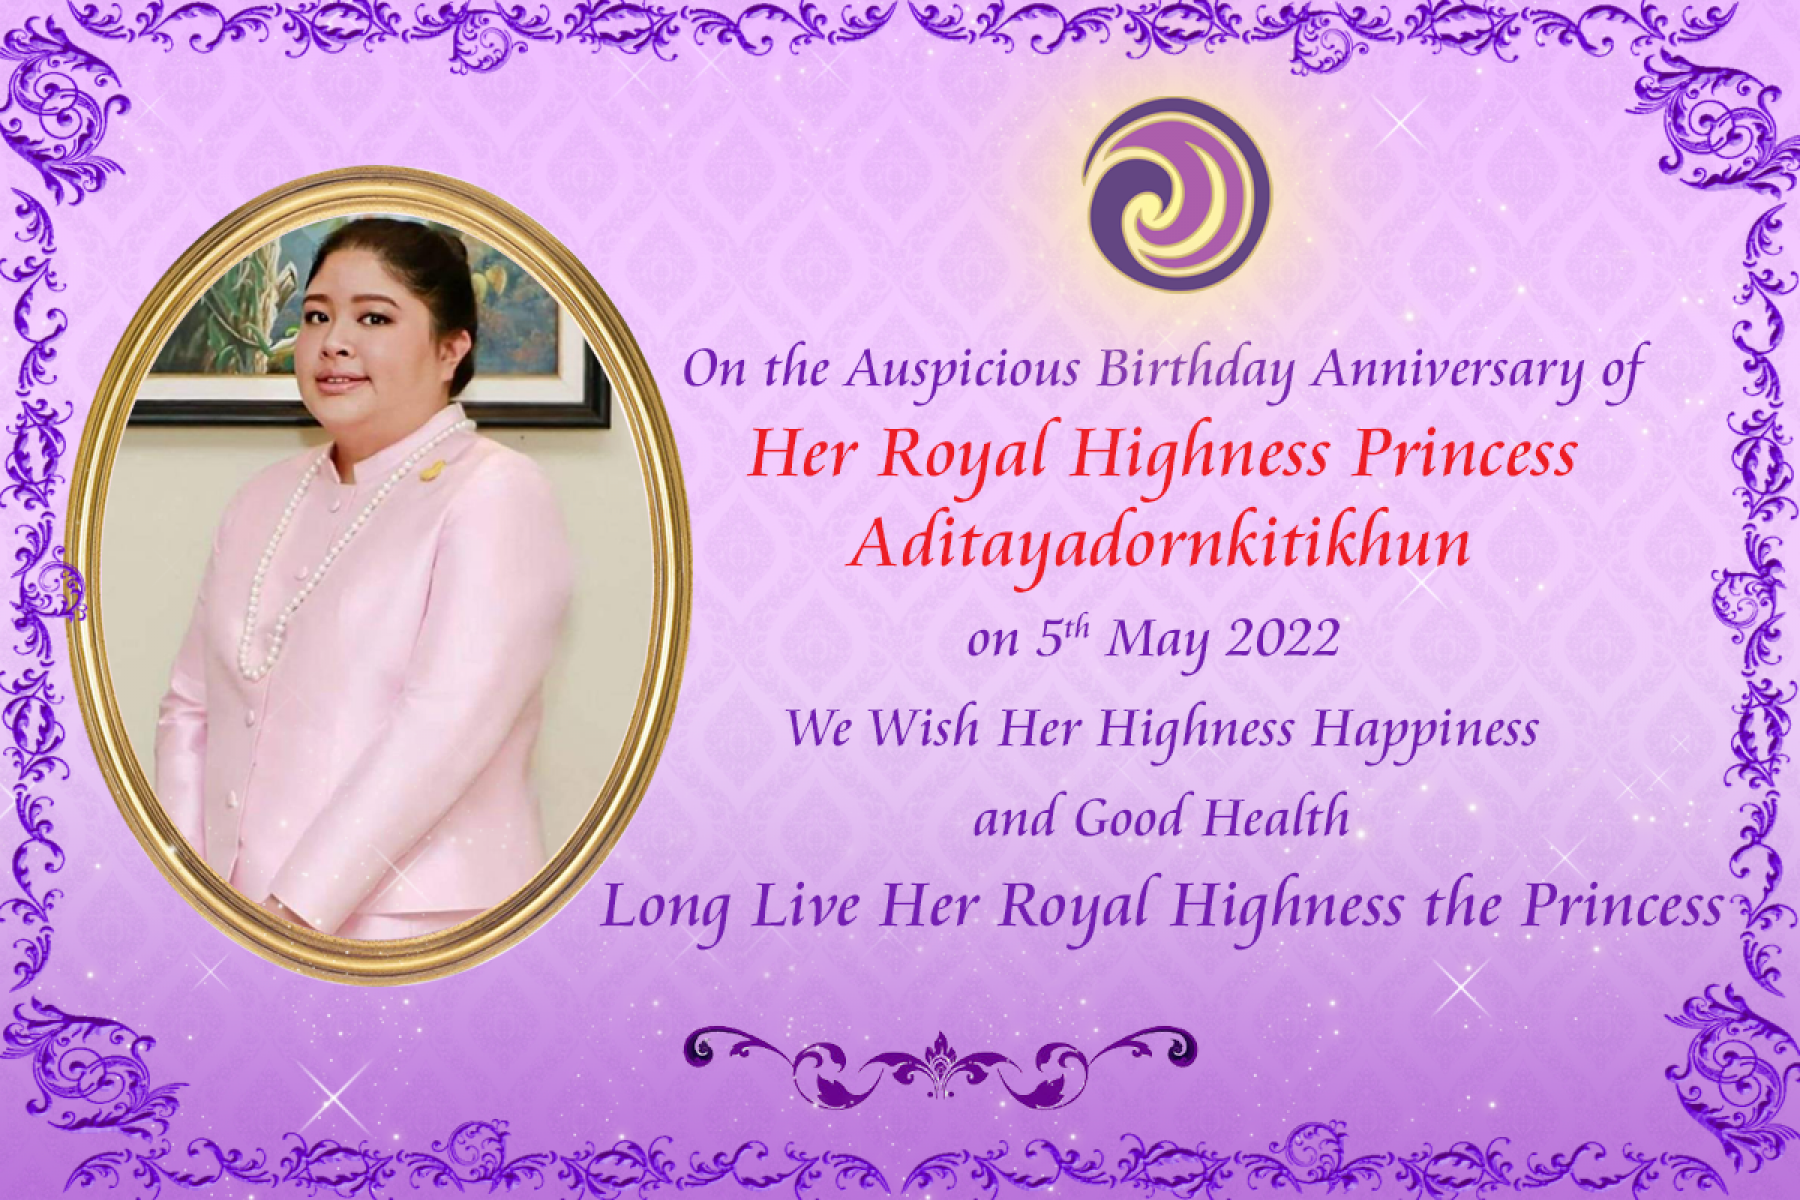 Royal Birthday Anniversary of Her Royal Highness Princess Aditayadornkitikhun, 5 May